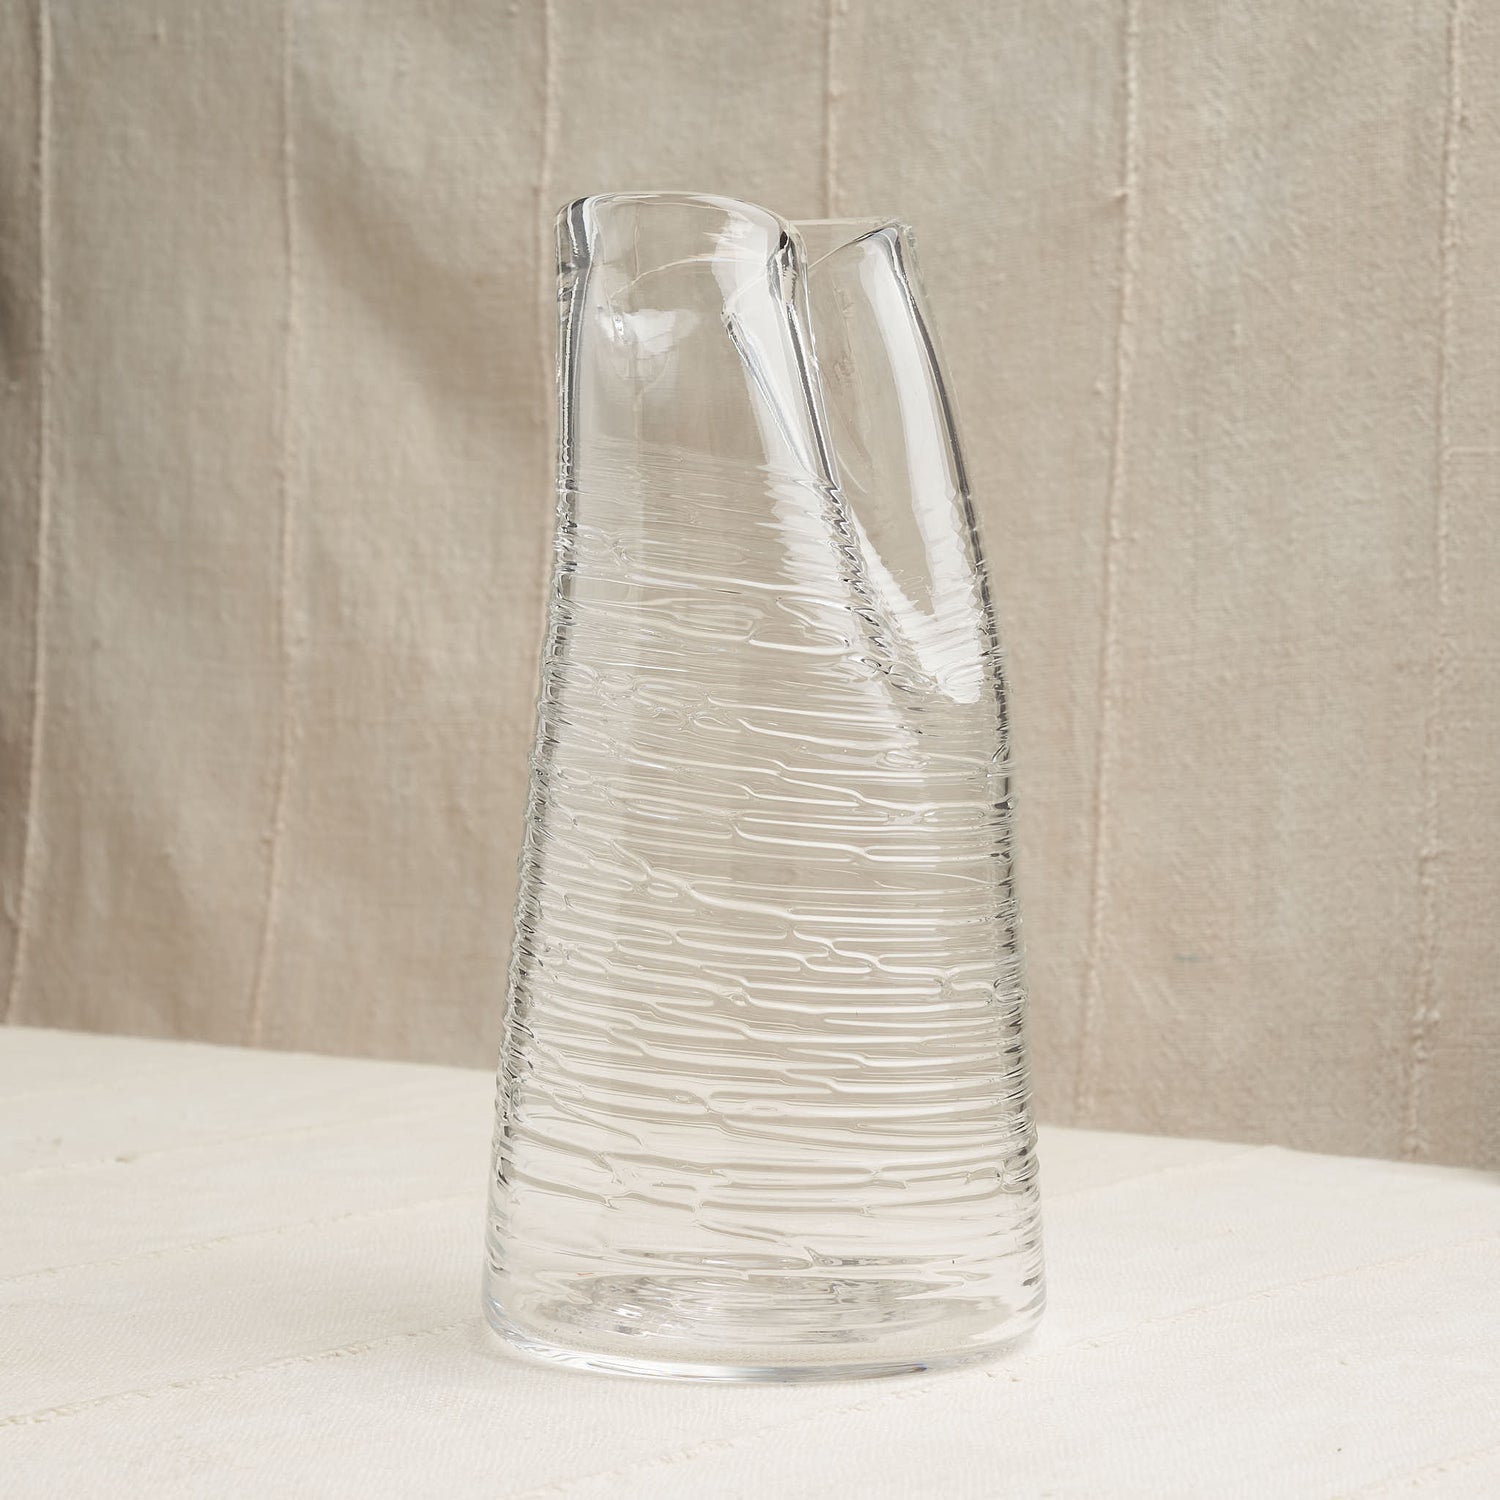 Handblown Folded Glass Carafe